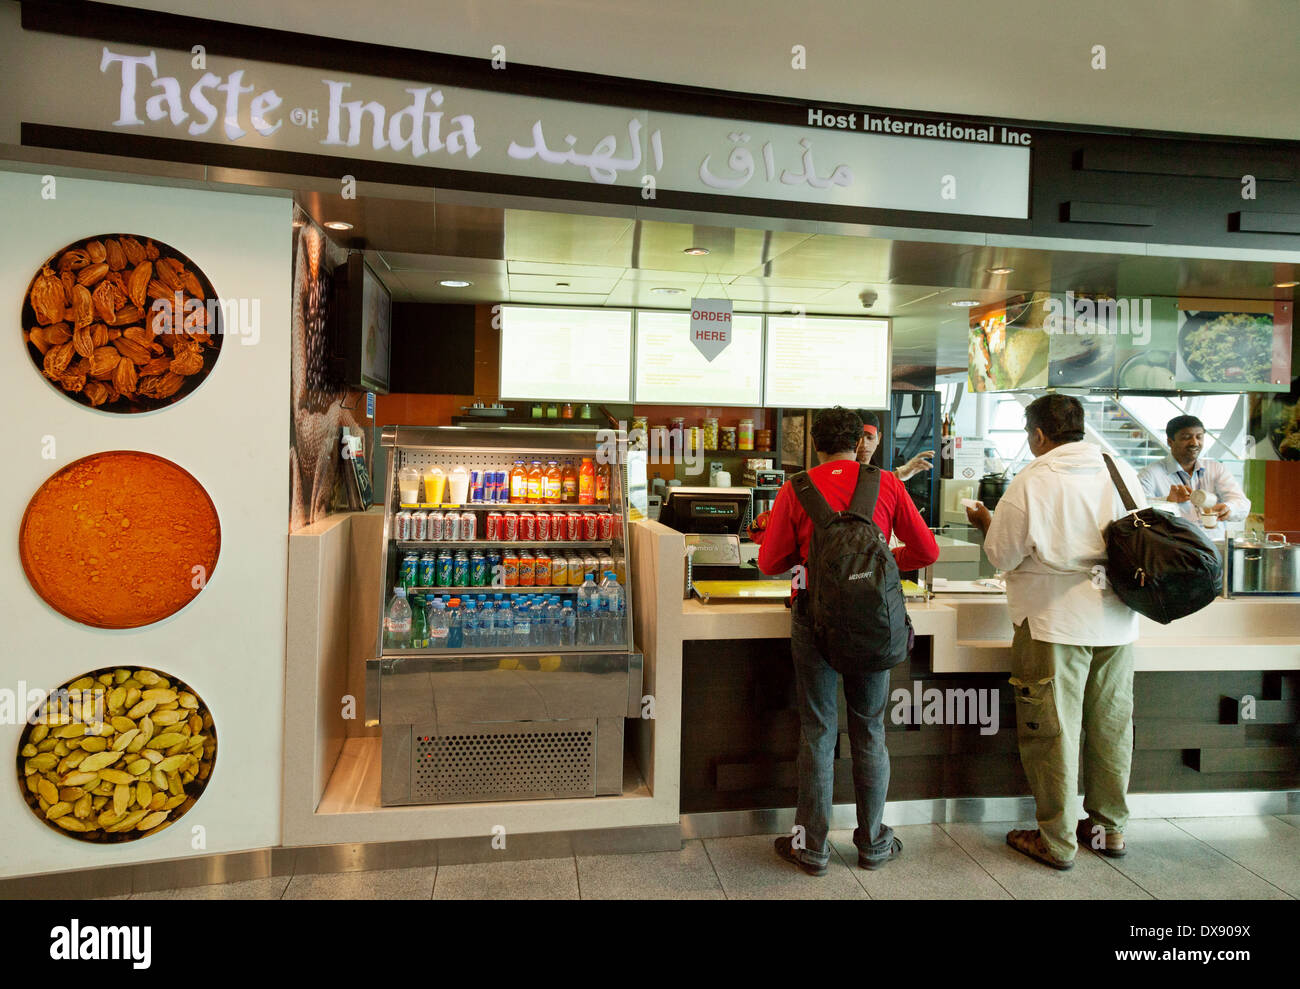 Café Restaurant saveurs de l'Inde, l'aéroport de Dubaï, terminal, ÉMIRATS ARABES UNIS, cadre voulu Arabes Unis, Moyen Orient Banque D'Images